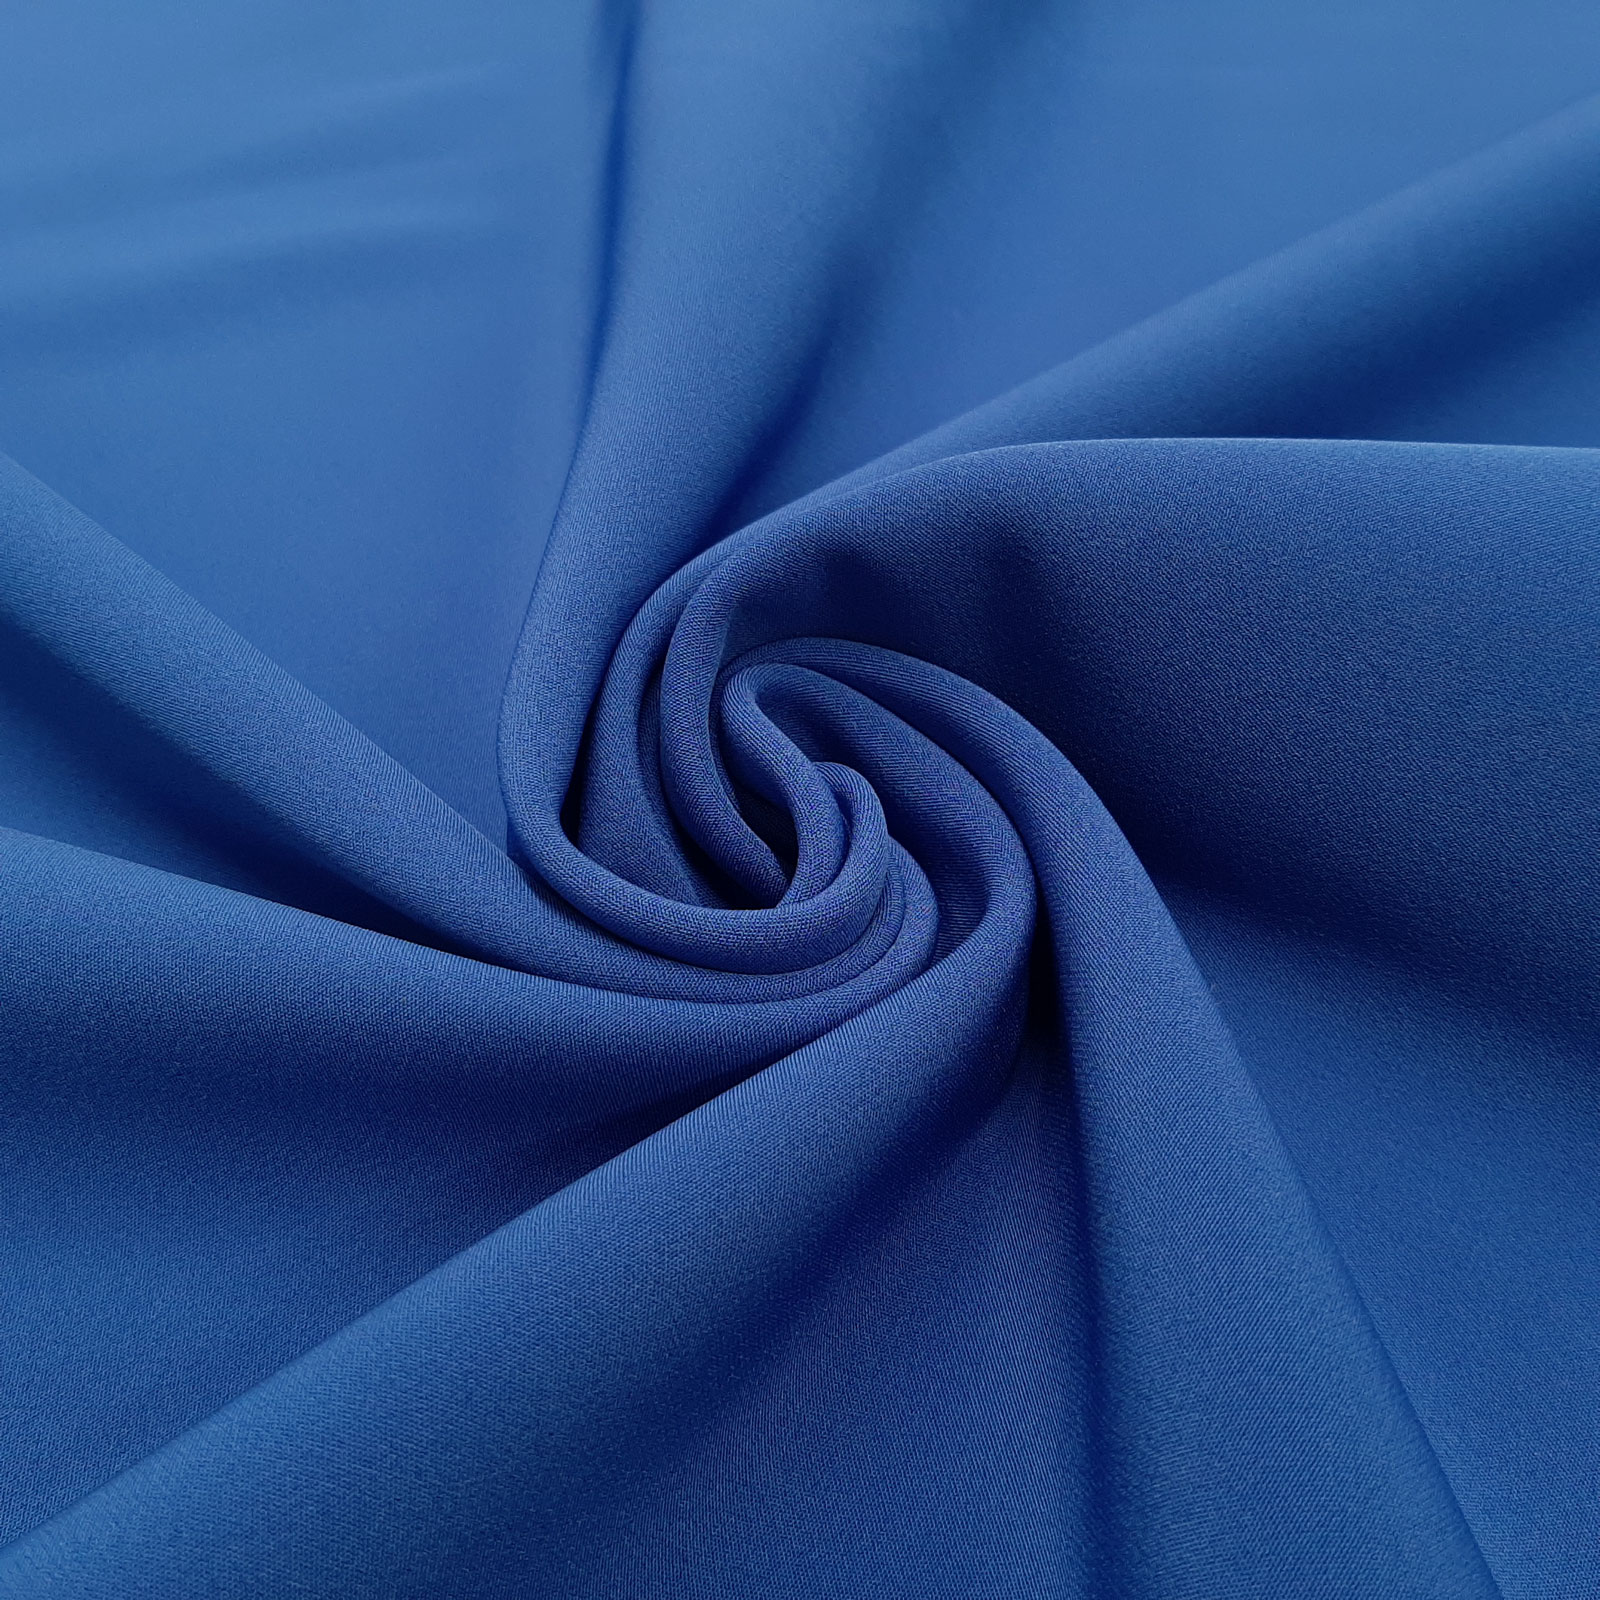 Medea - 4-Way-Stretch Softshell - Royal blue